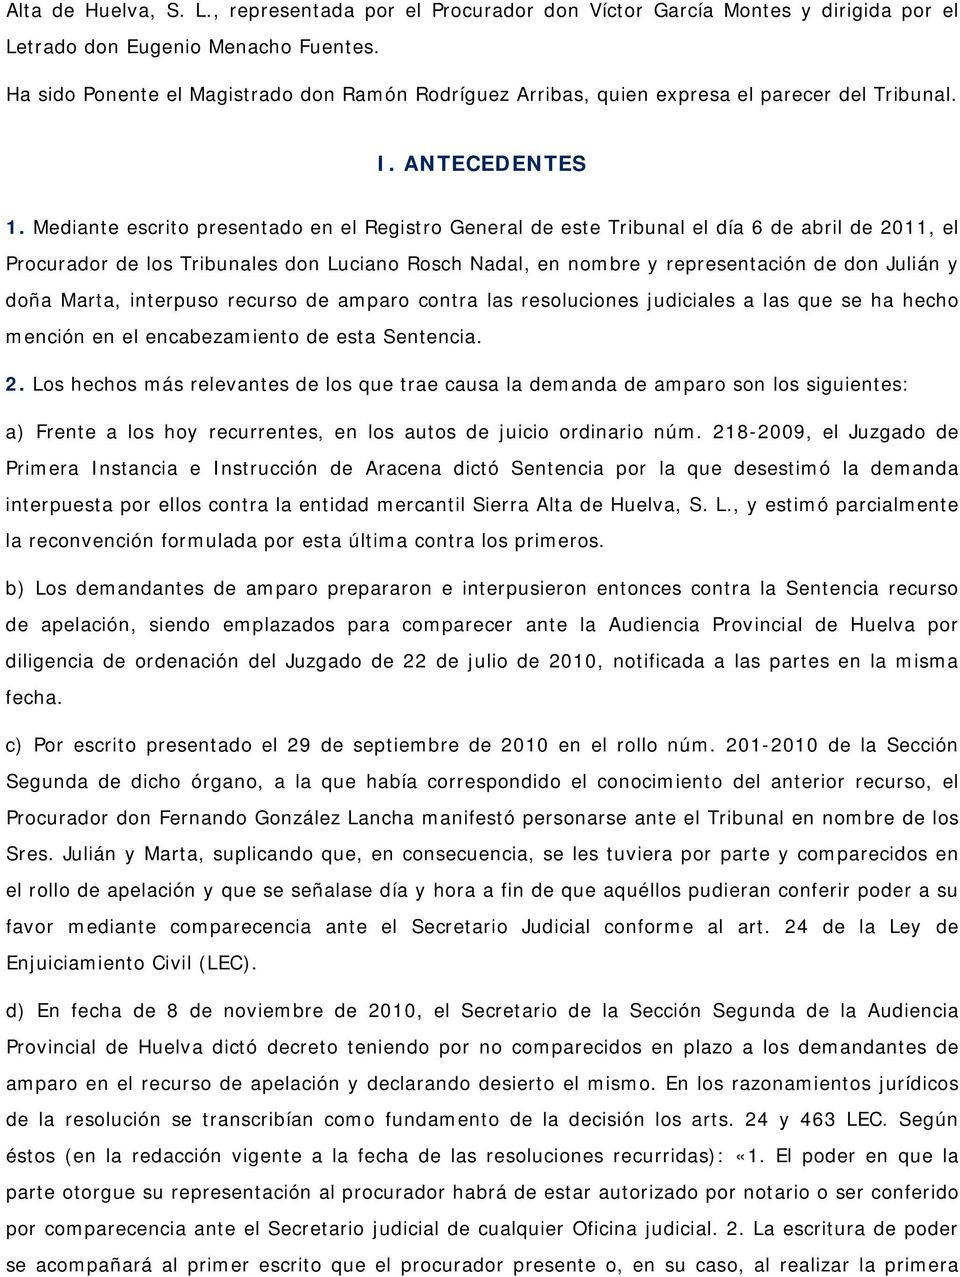 Mediante escrito presentado en el Registro General de este Tribunal el día 6 de abril de 2011, el Procurador de los Tribunales don Luciano Rosch Nadal, en nombre y representación de don Julián y doña